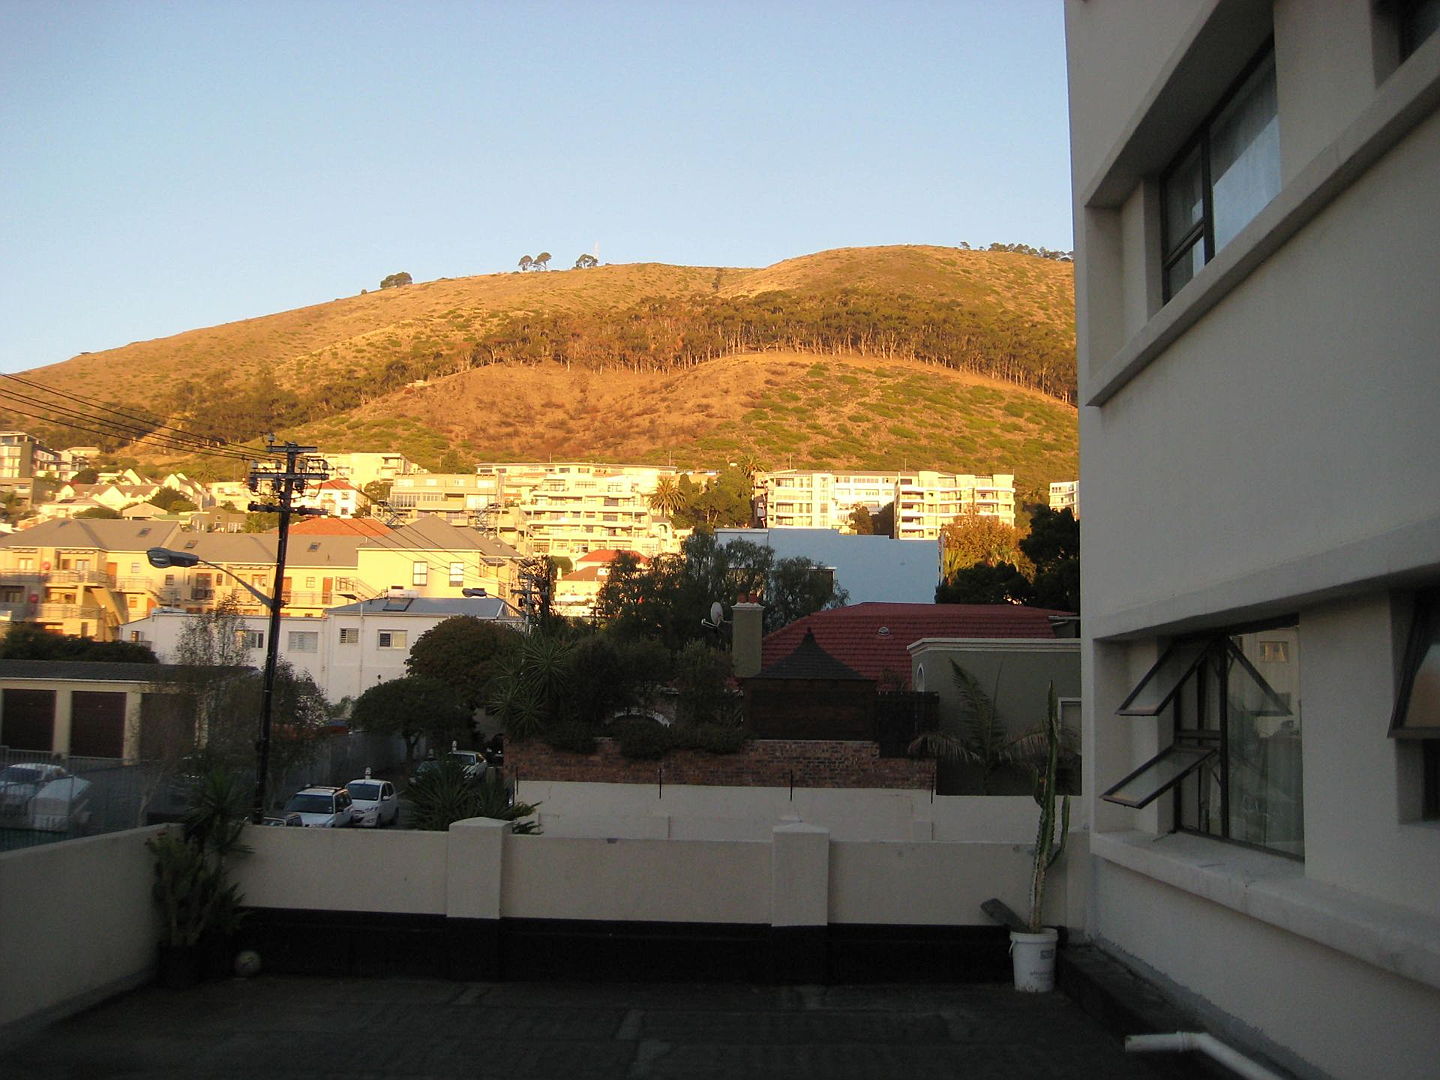  Cape Town
- ENV97453.jpg